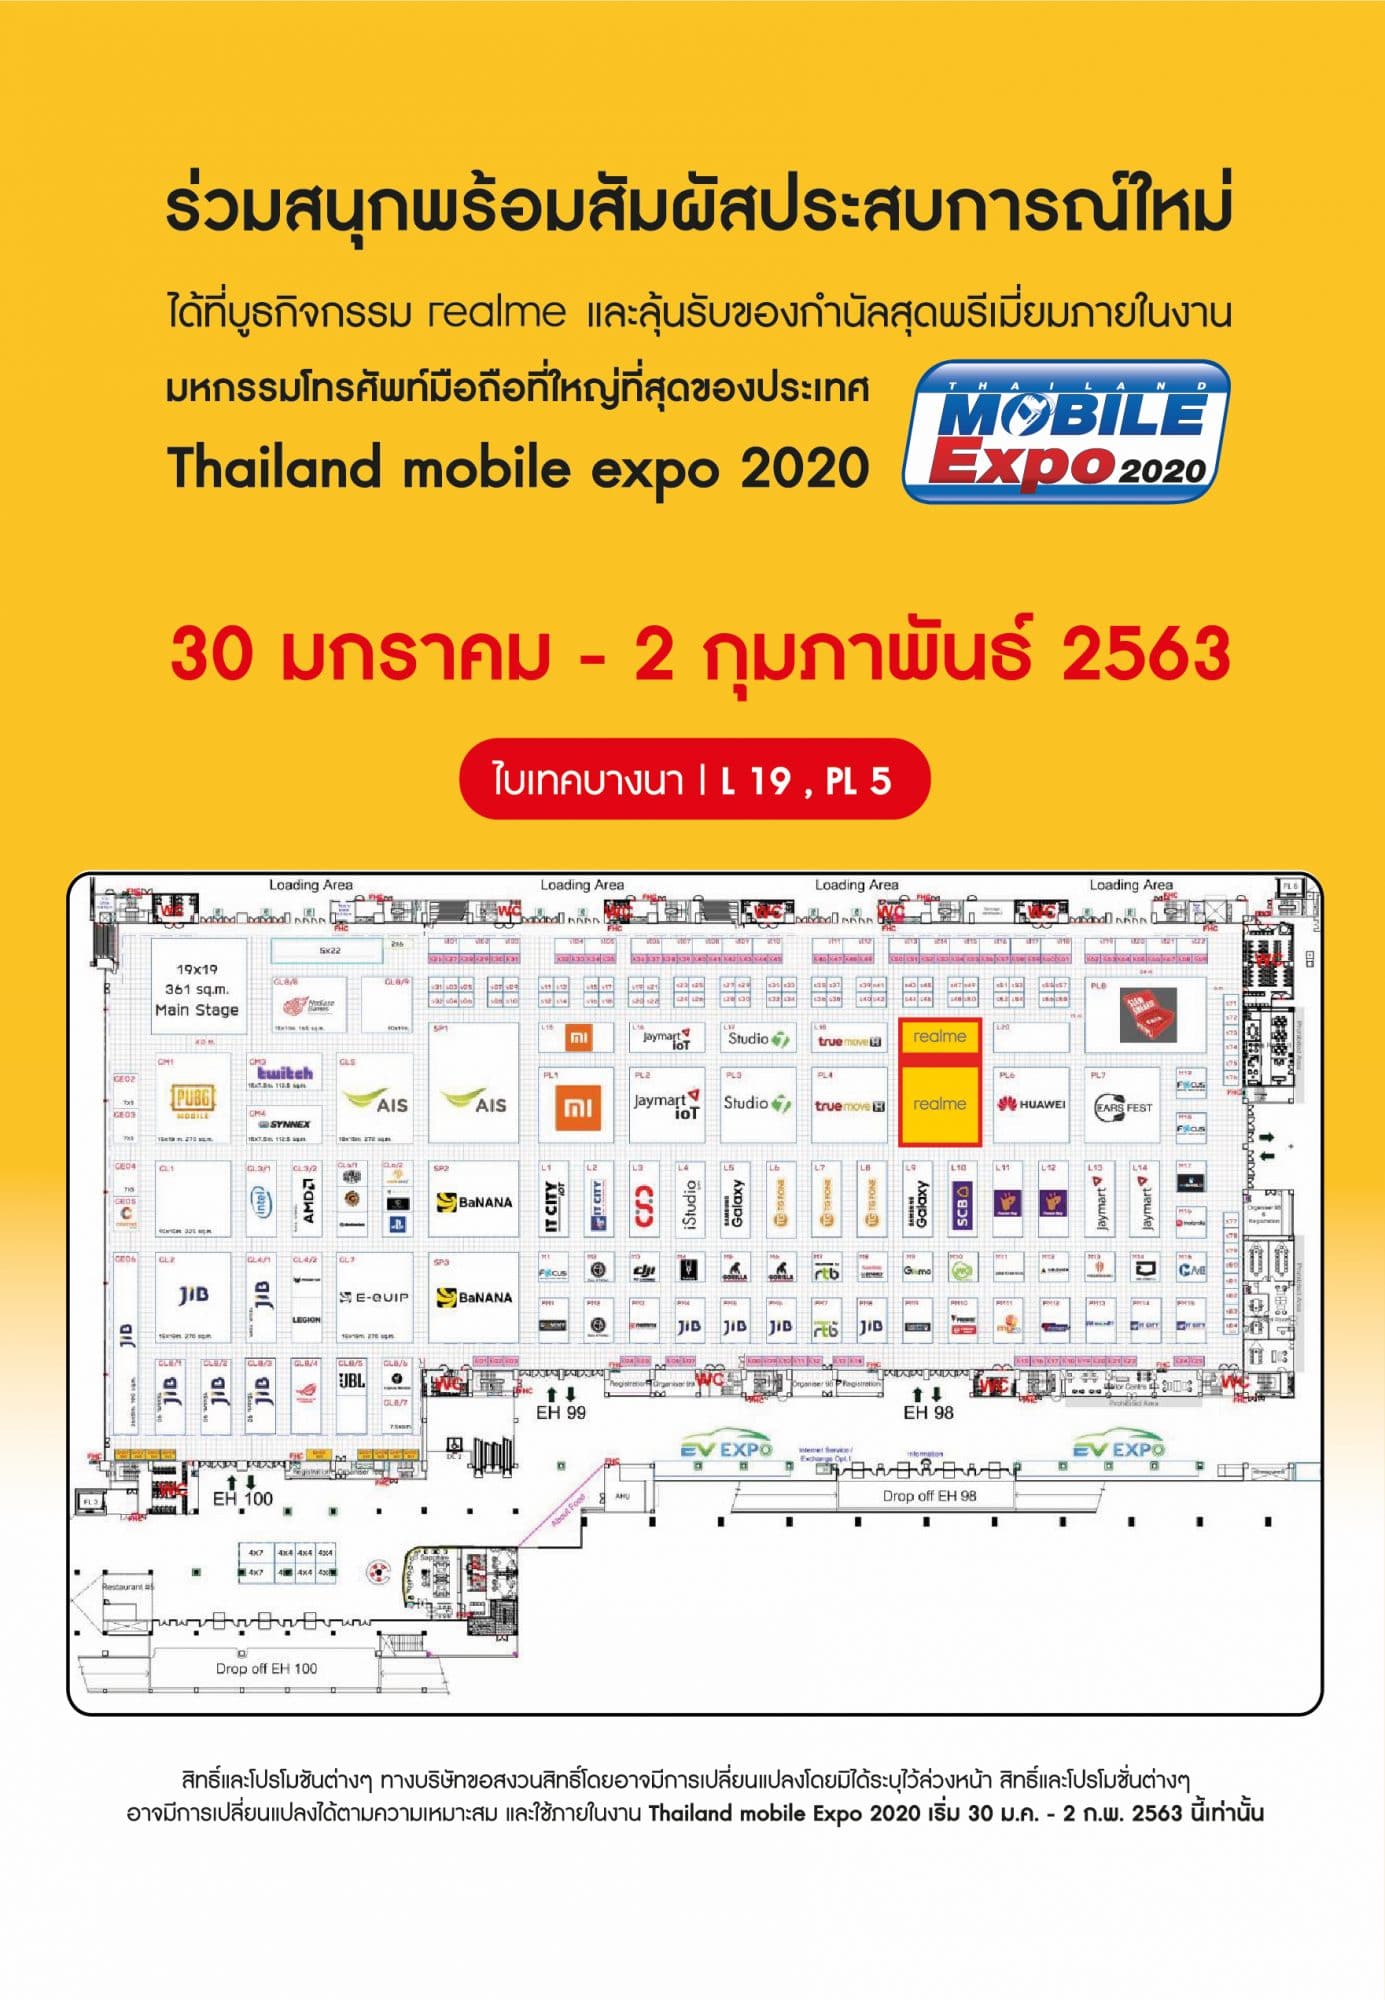 รวมโปรโมชัน realme ในงาน Thailand Mobile Expo 2020 5